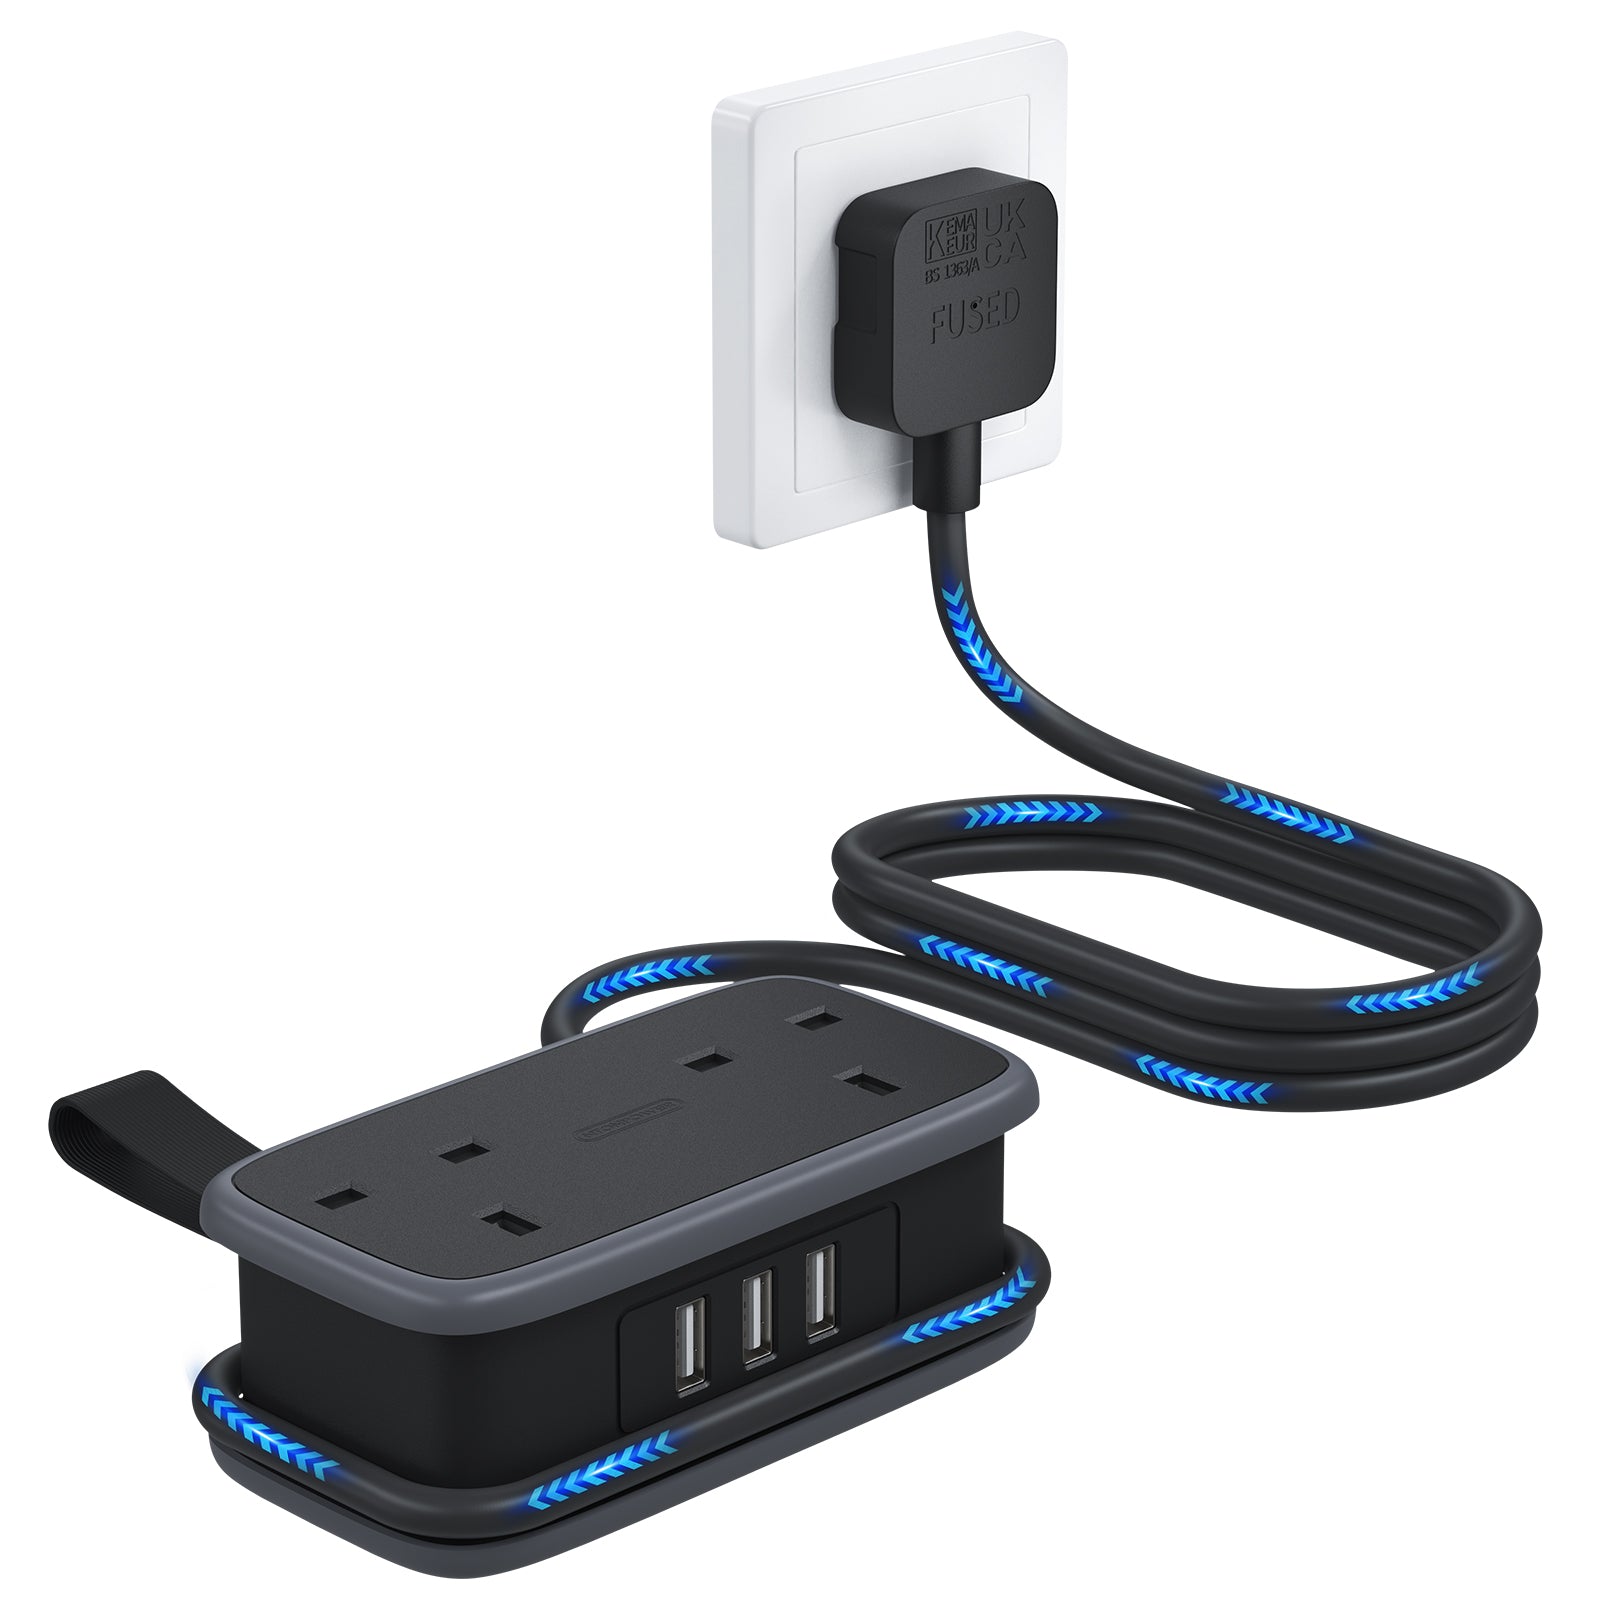 CHARGEUR MULTI-USB X 20 PORTS - Batteries et chargeurs (11105321)